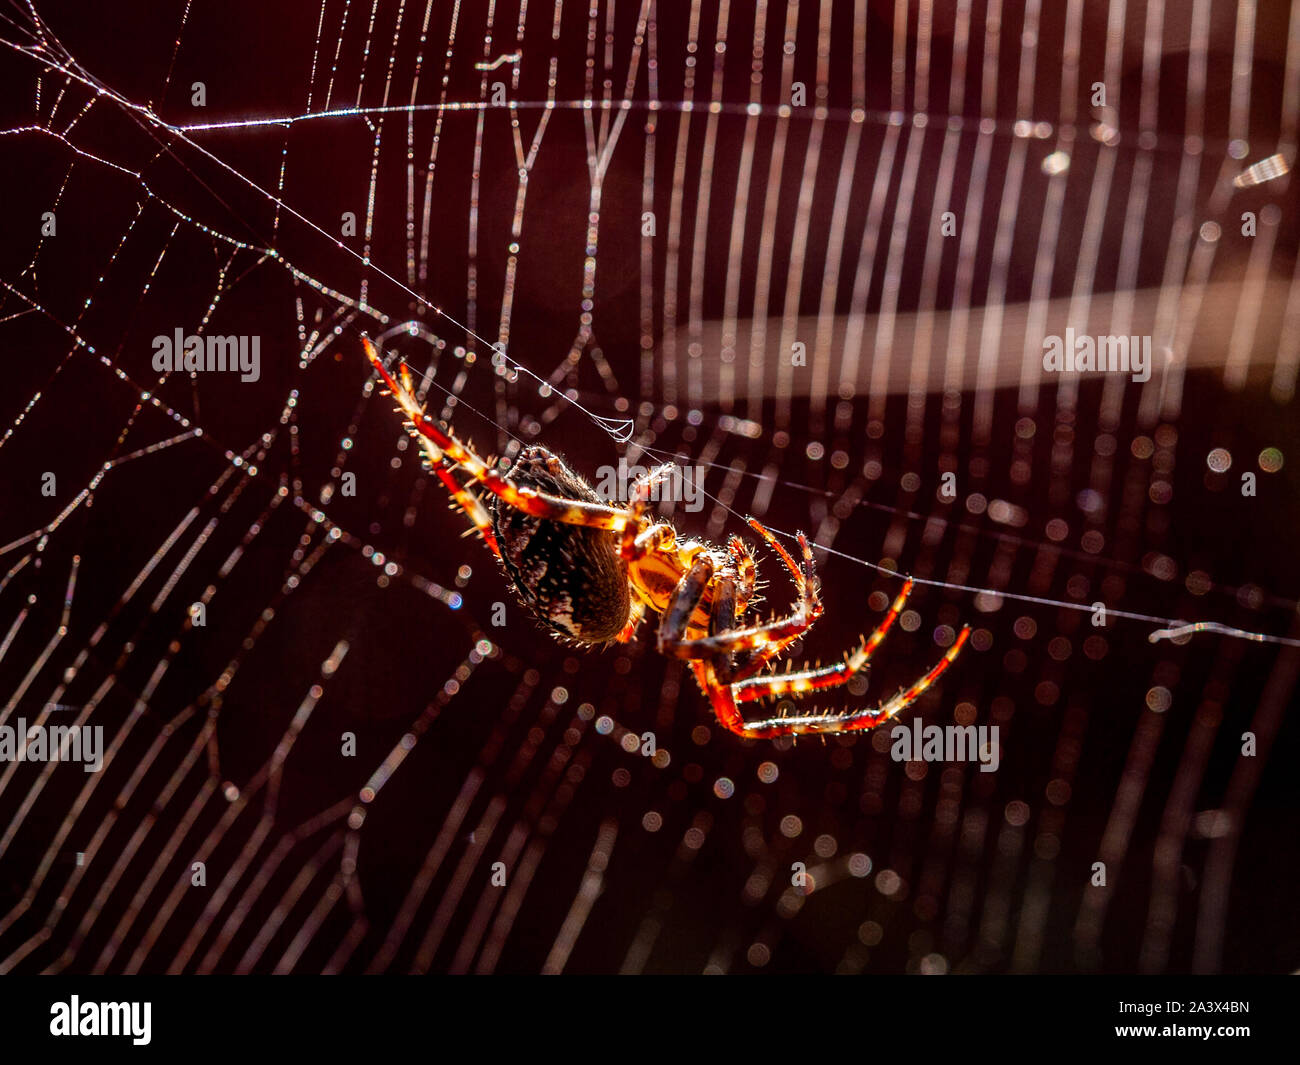 Jardin araignée suspendu par un thread dans la lumière du soleil avec son site web à l'arrière-plan. Soie peut être observé venant de ses filières. Banque D'Images